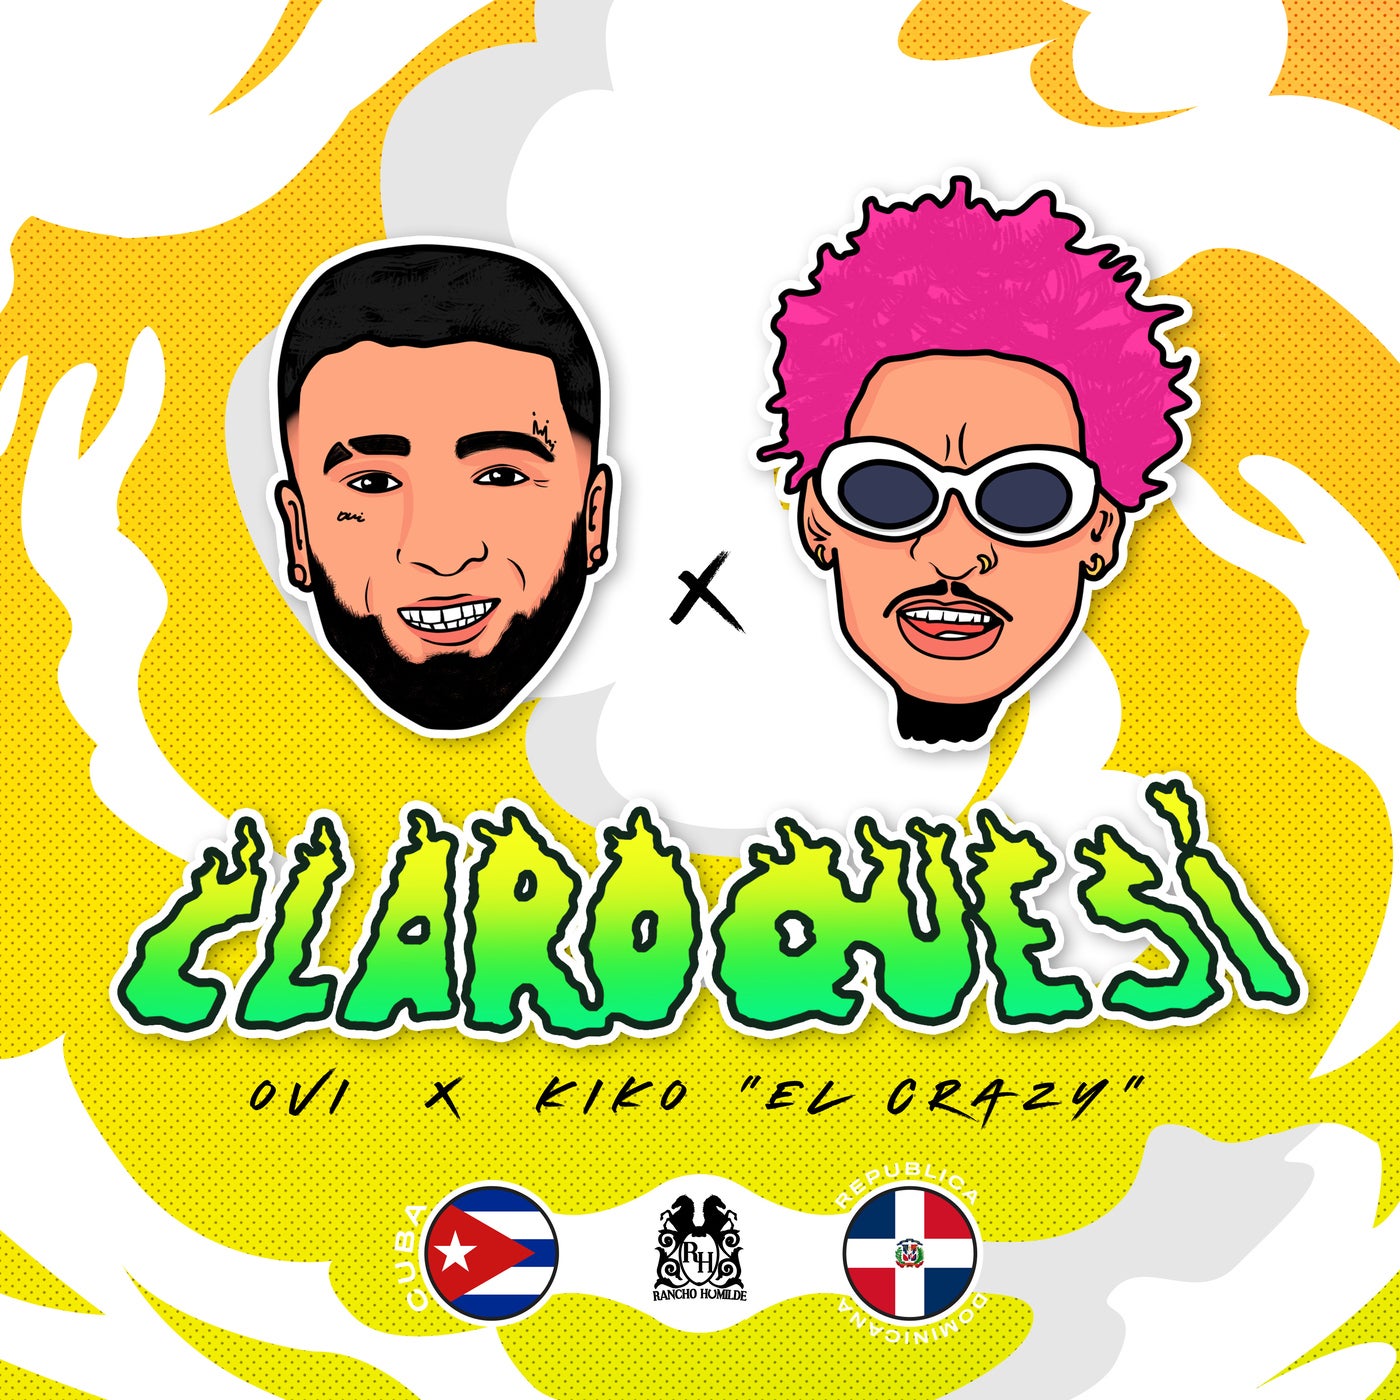 Claro Que Sí by Kiko El and OVI on Beatsource